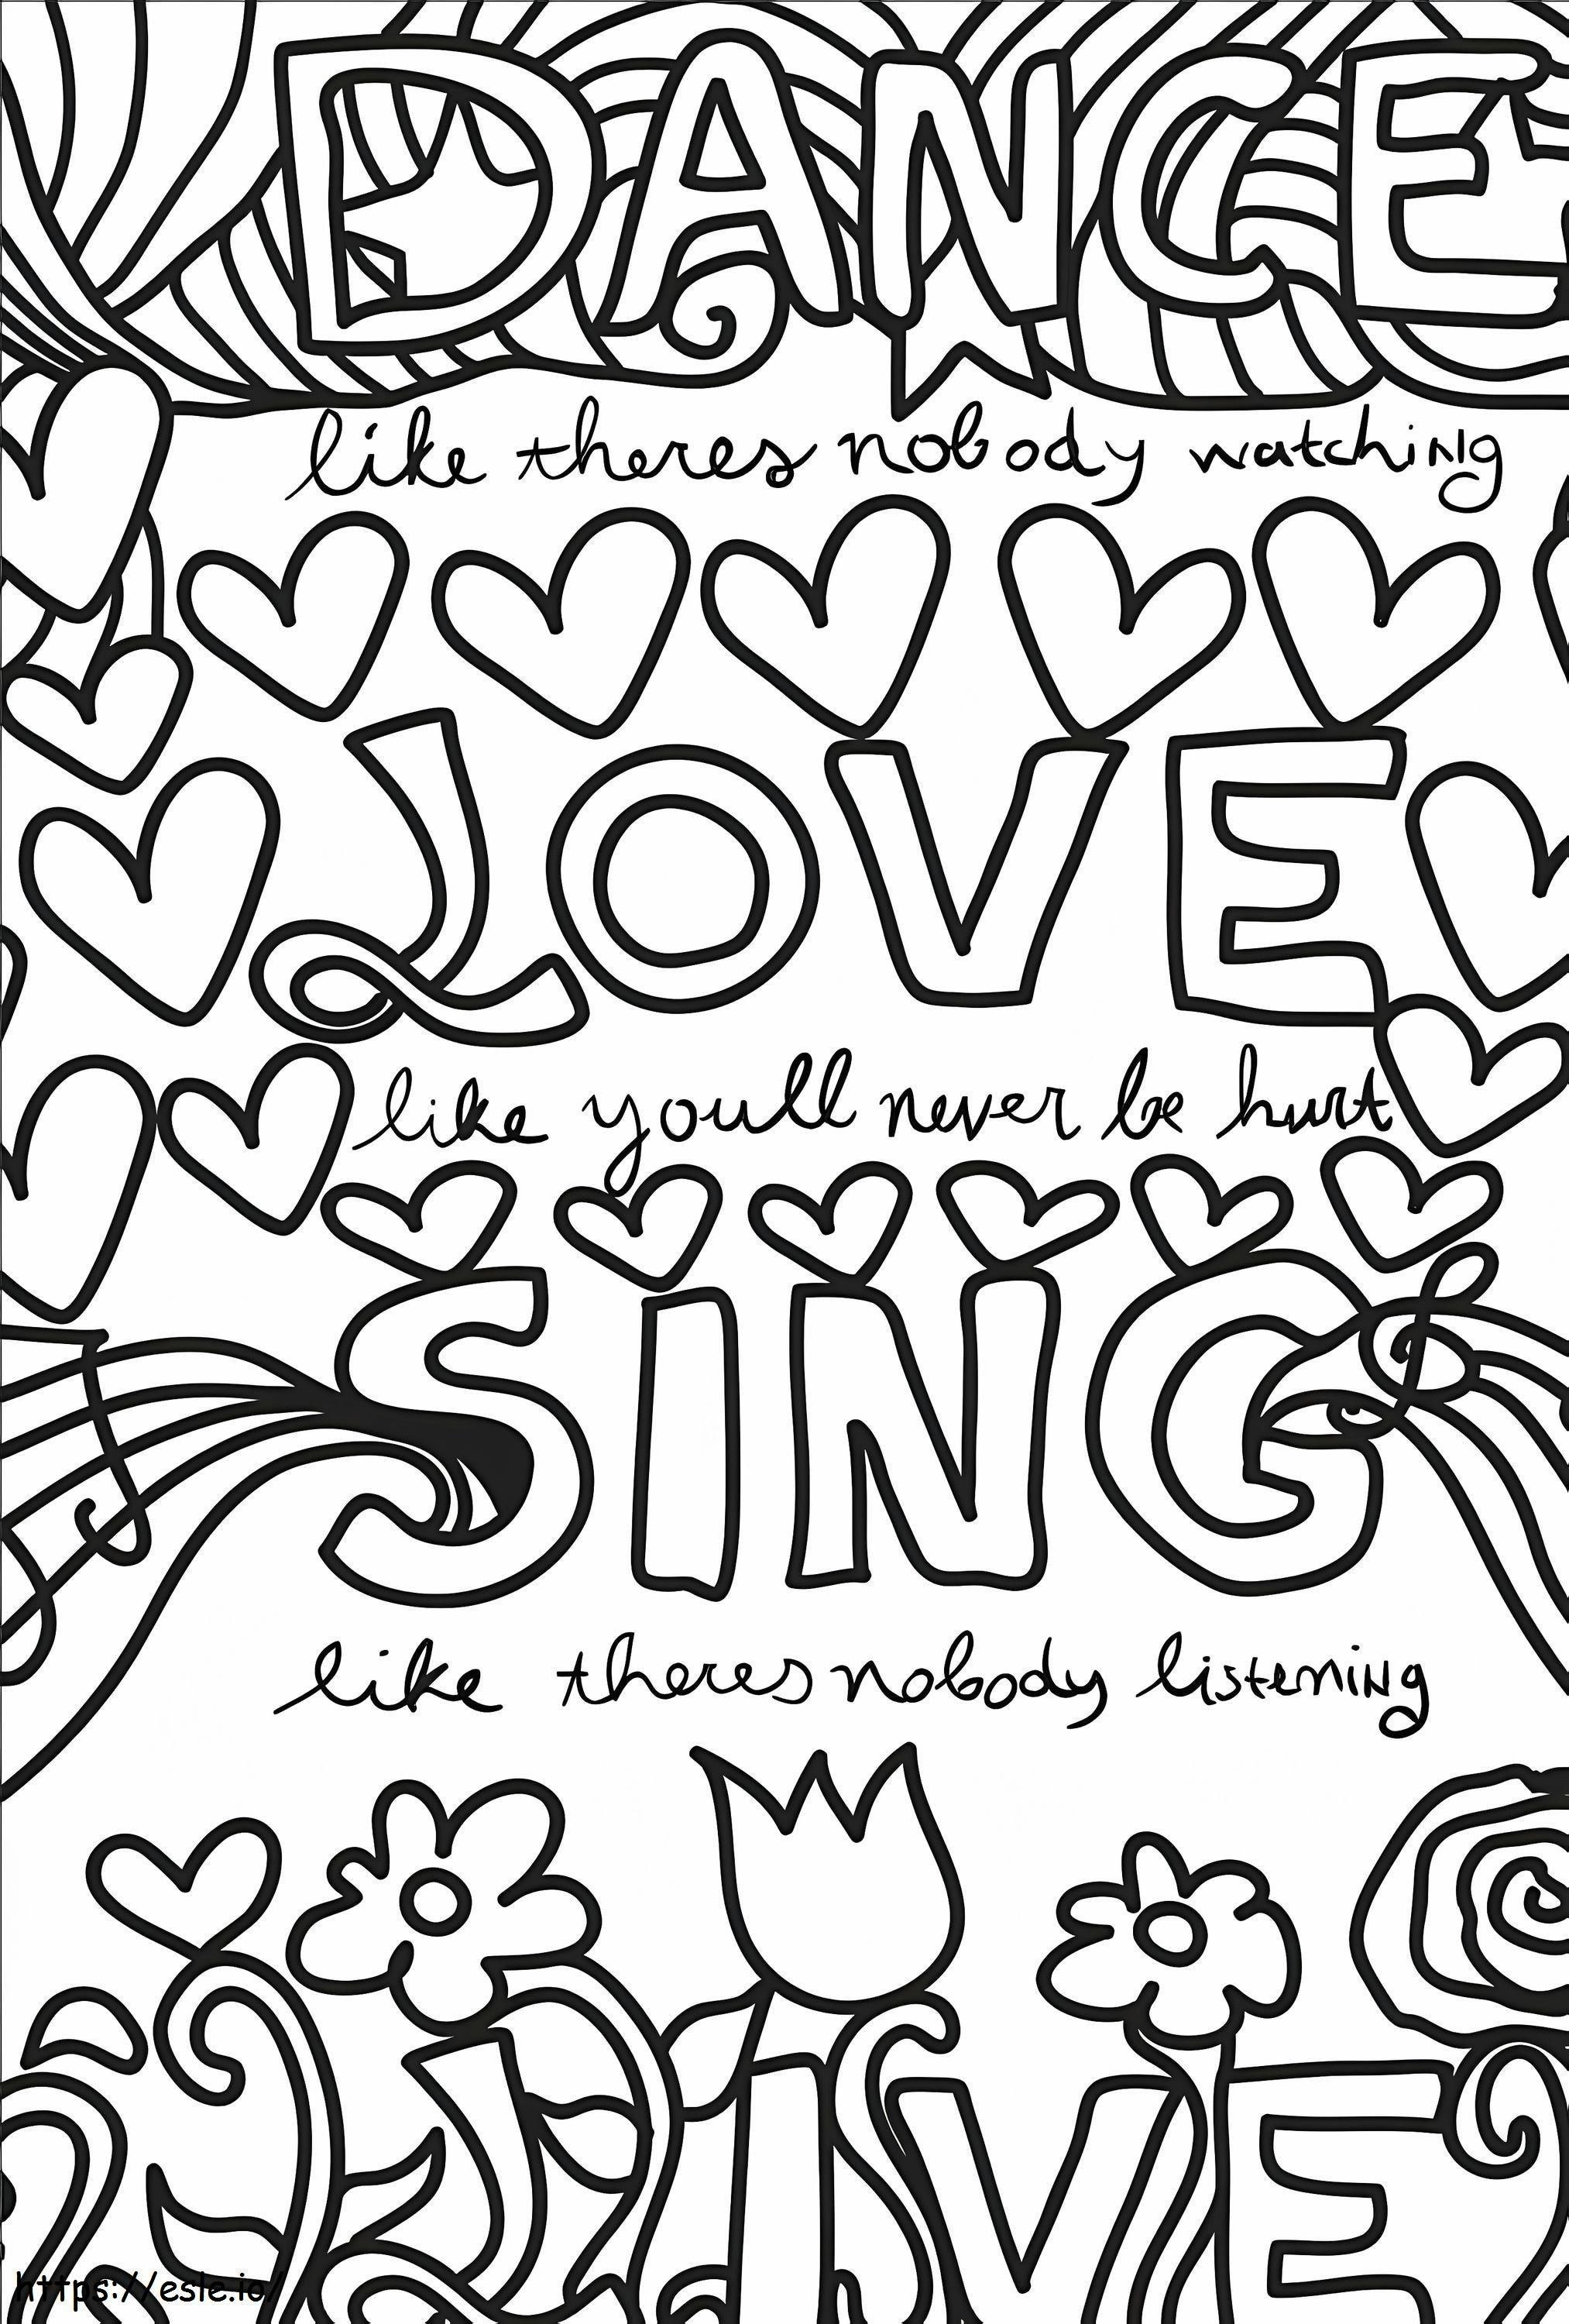 Dance Love Sing Live de colorat